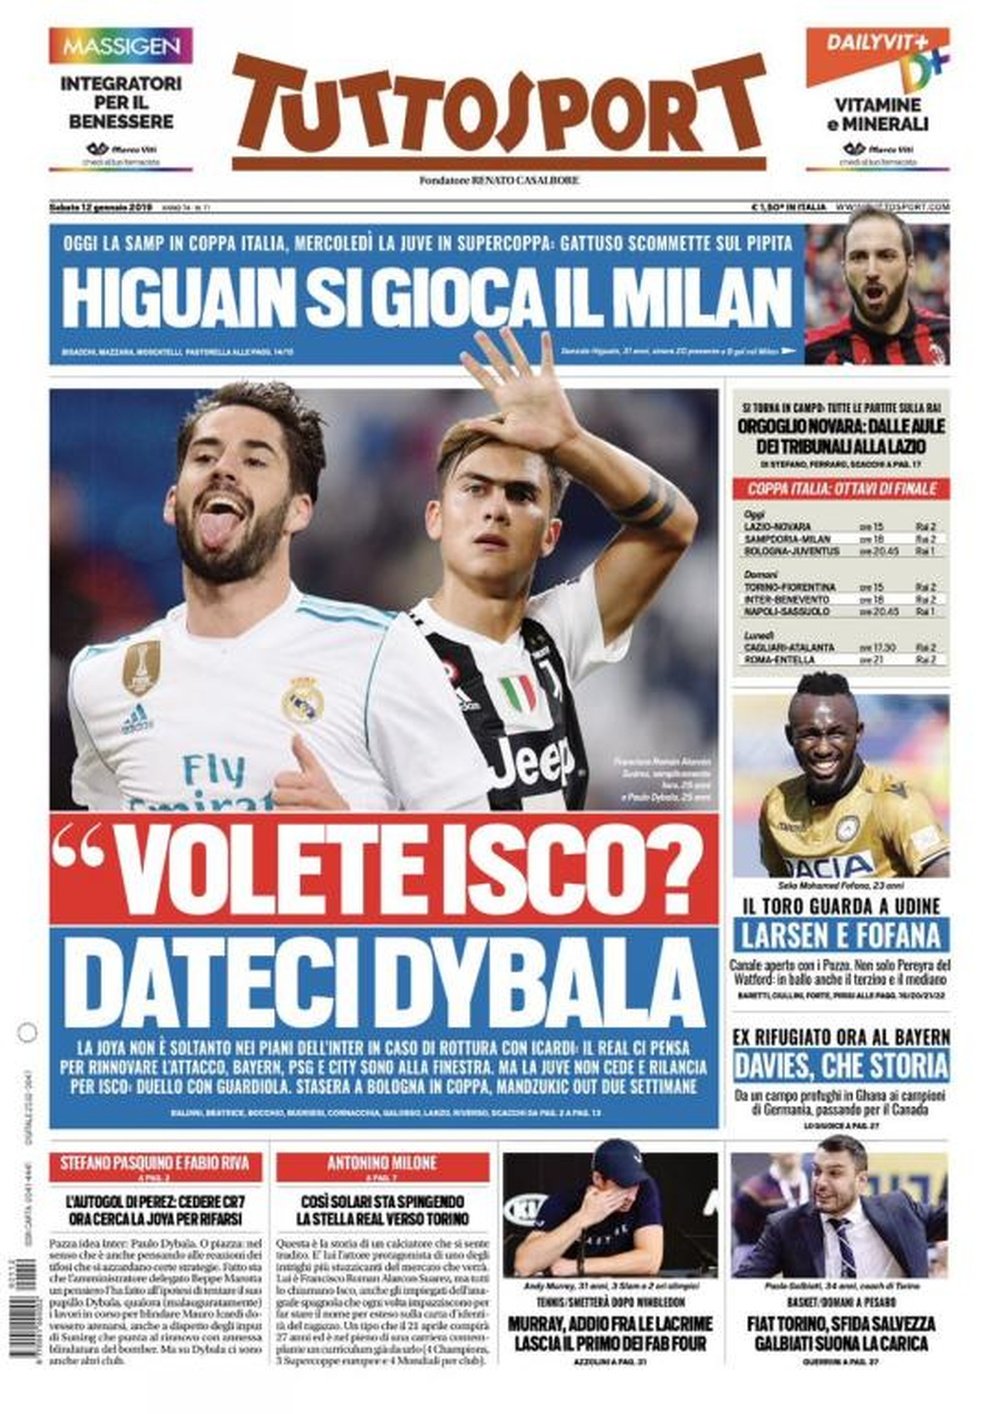 Los medios hablan de la posibilidad de que el Madrid fiche a Dybala a cambio de Isco. Tuttosport